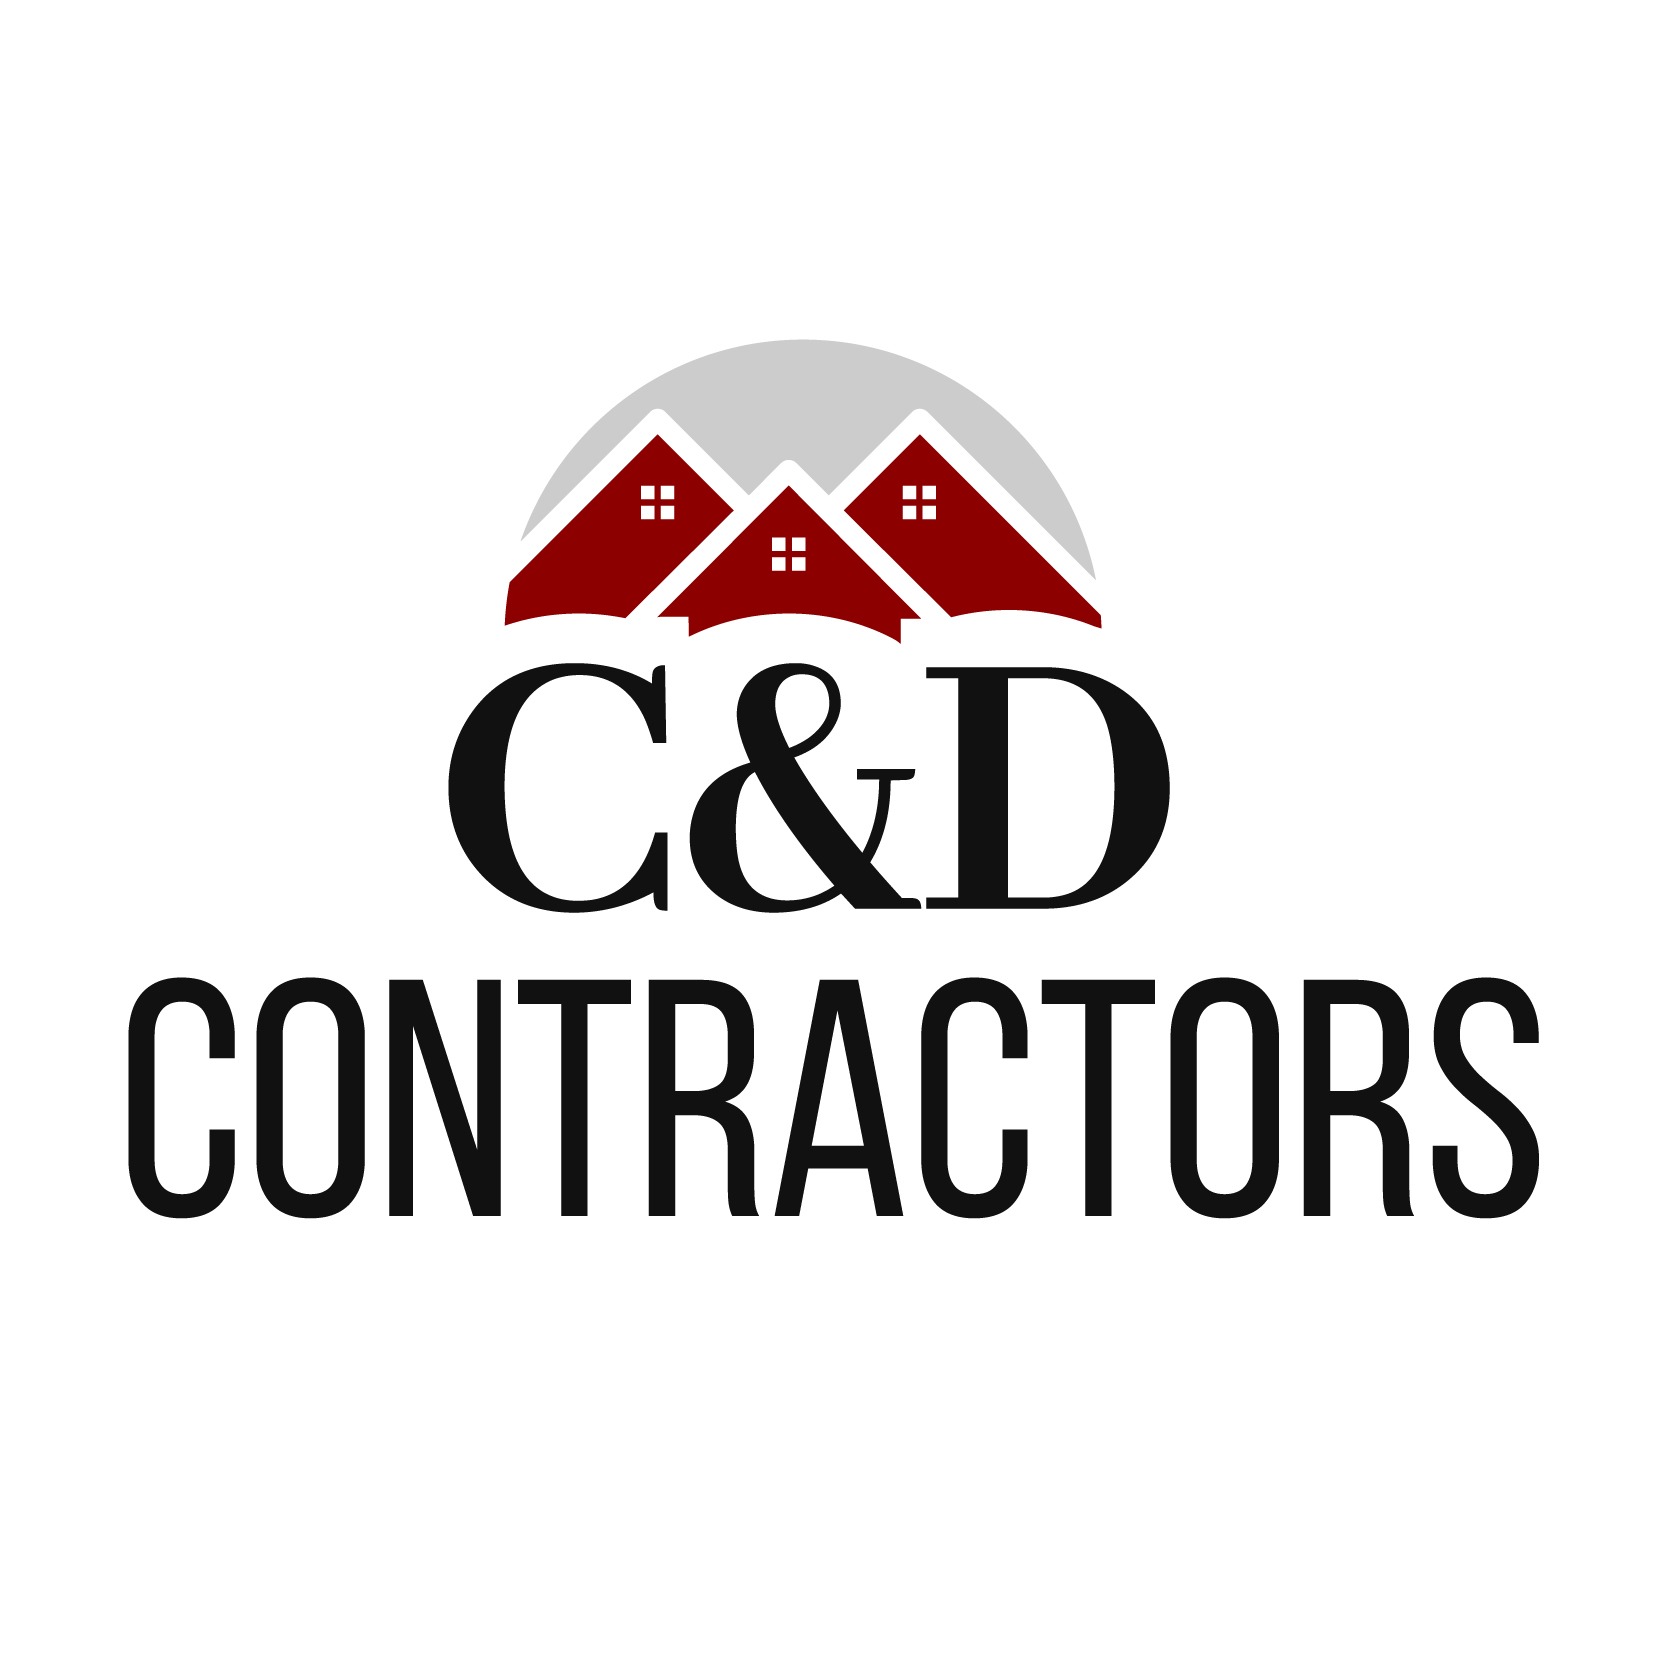 C&D Contractors